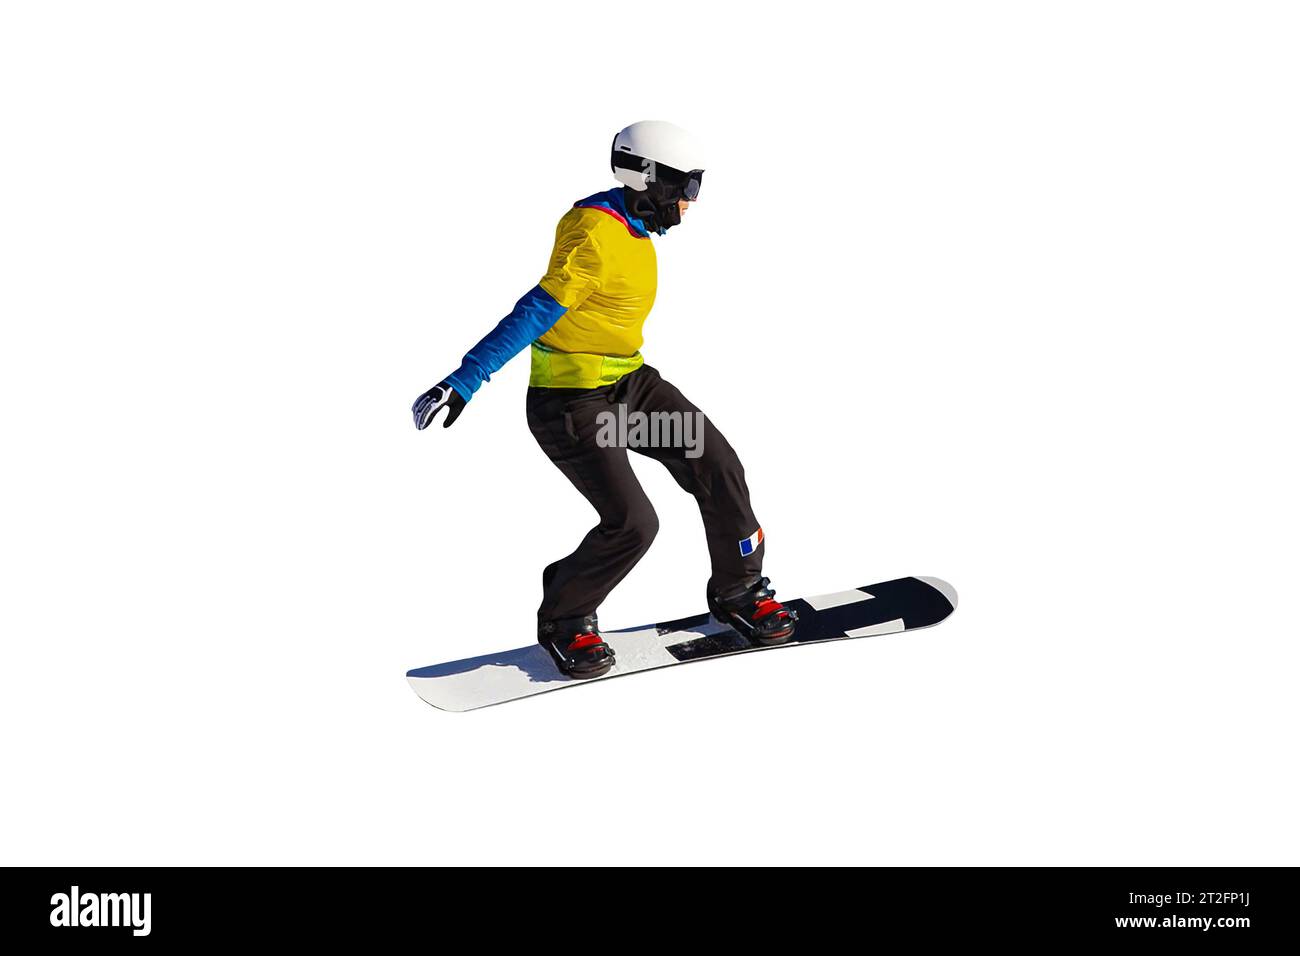 Frau Athlet Snowboarder im Team Frankreich springen Tropfen im Snowboarden isoliert auf weißem Hintergrund Stockfoto